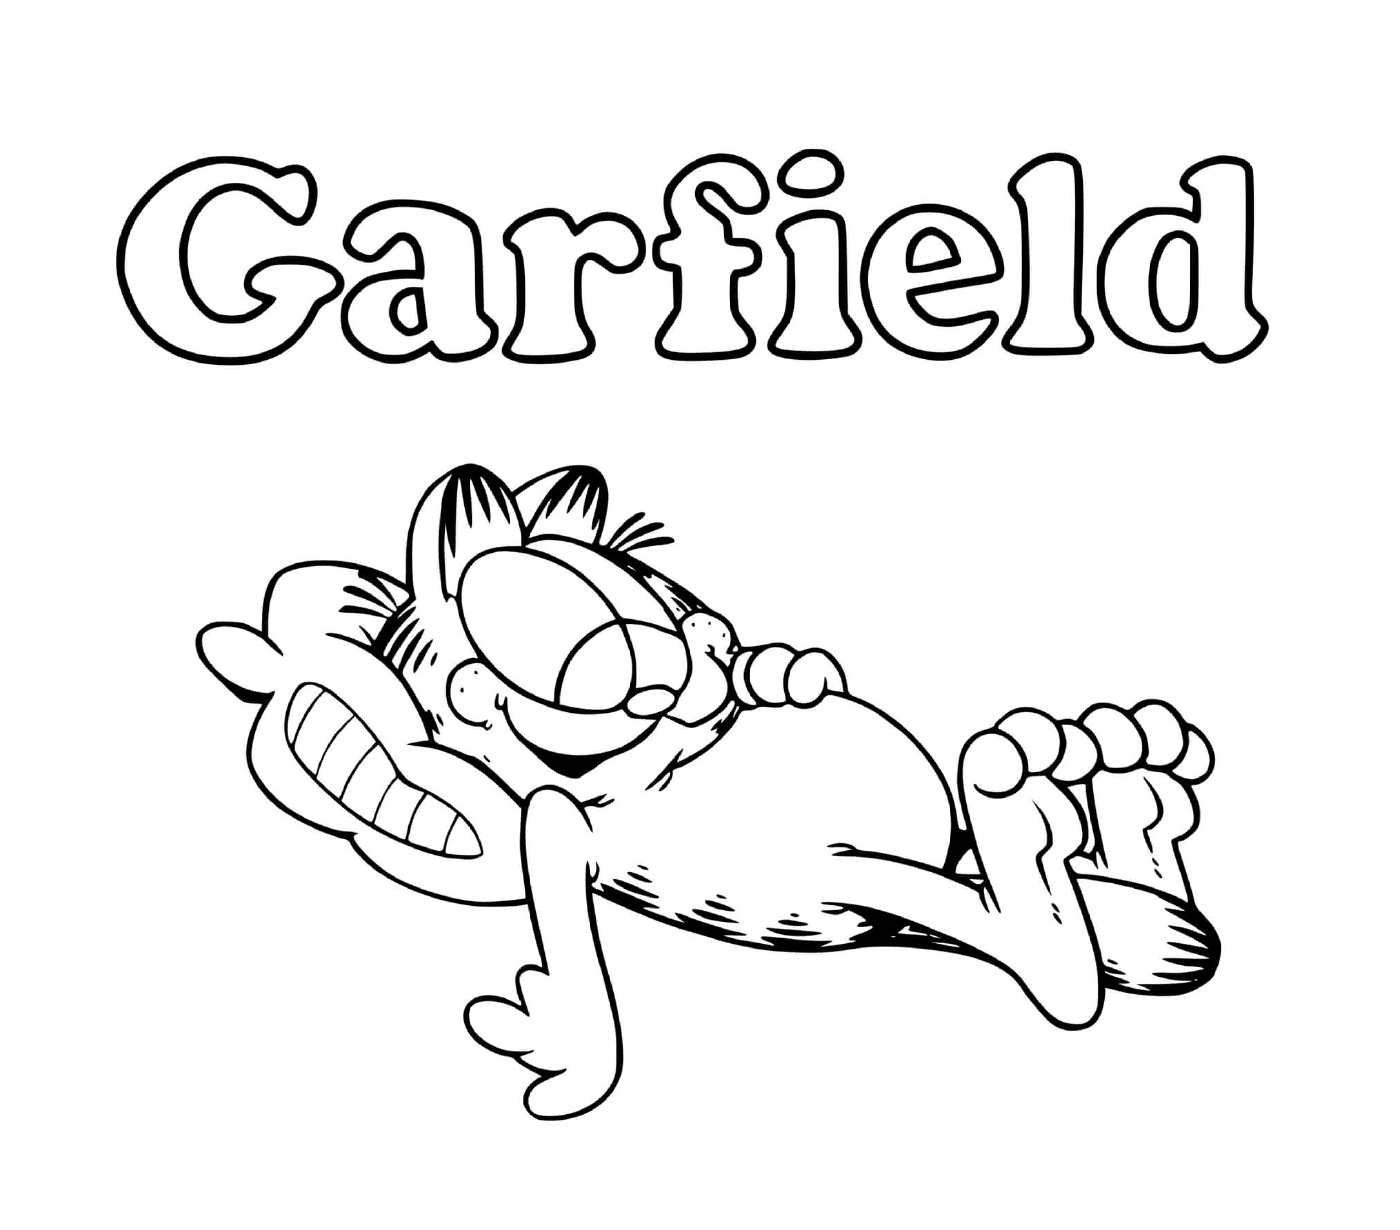   Garfield aime manger et dormir 